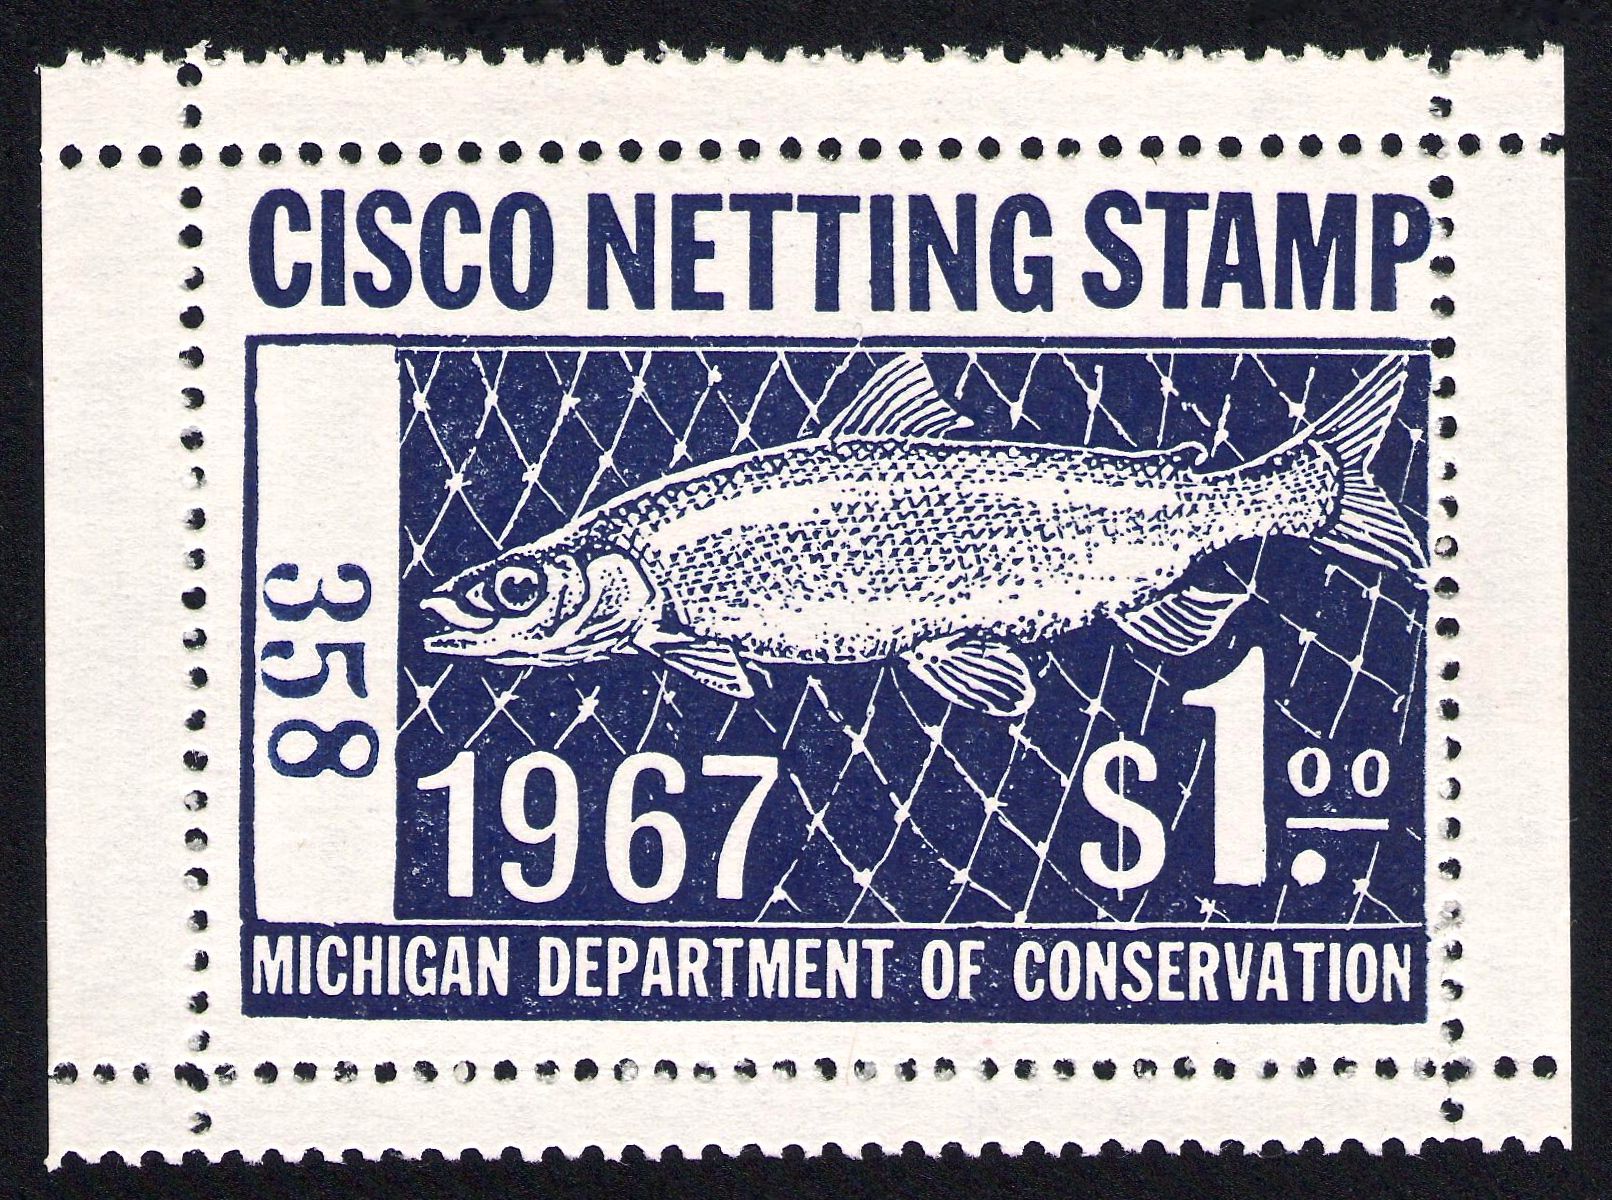 1967 Michigan Cisco Netting